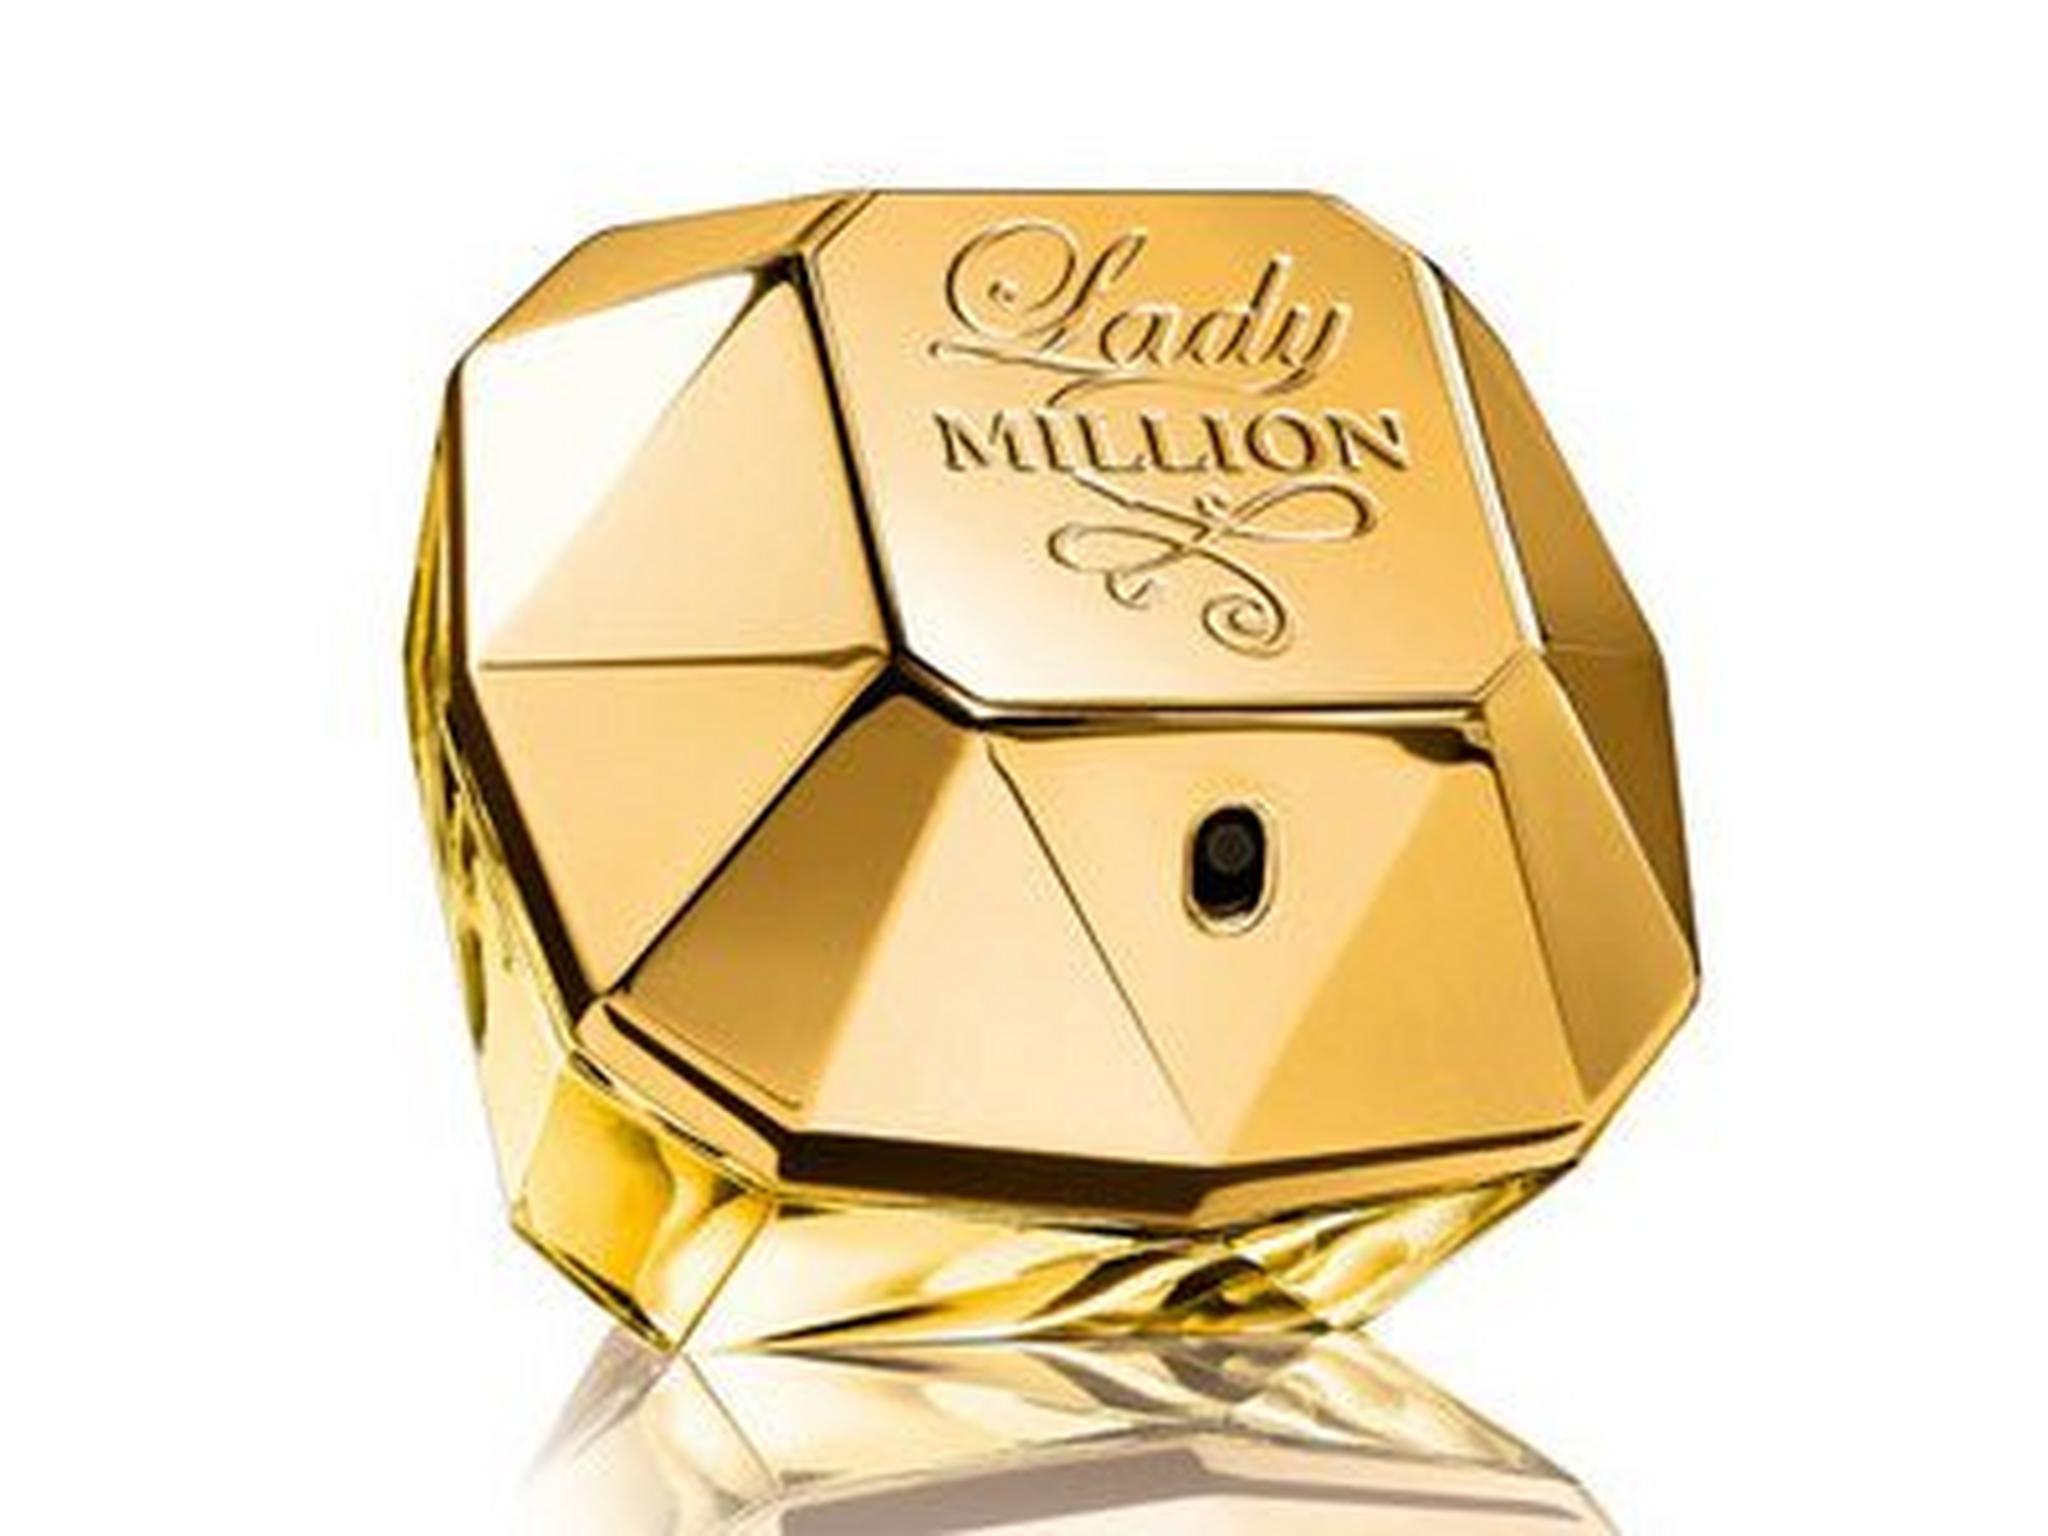 Lady Million by Paco Rabanne for Women 80mL Eau de Parfum